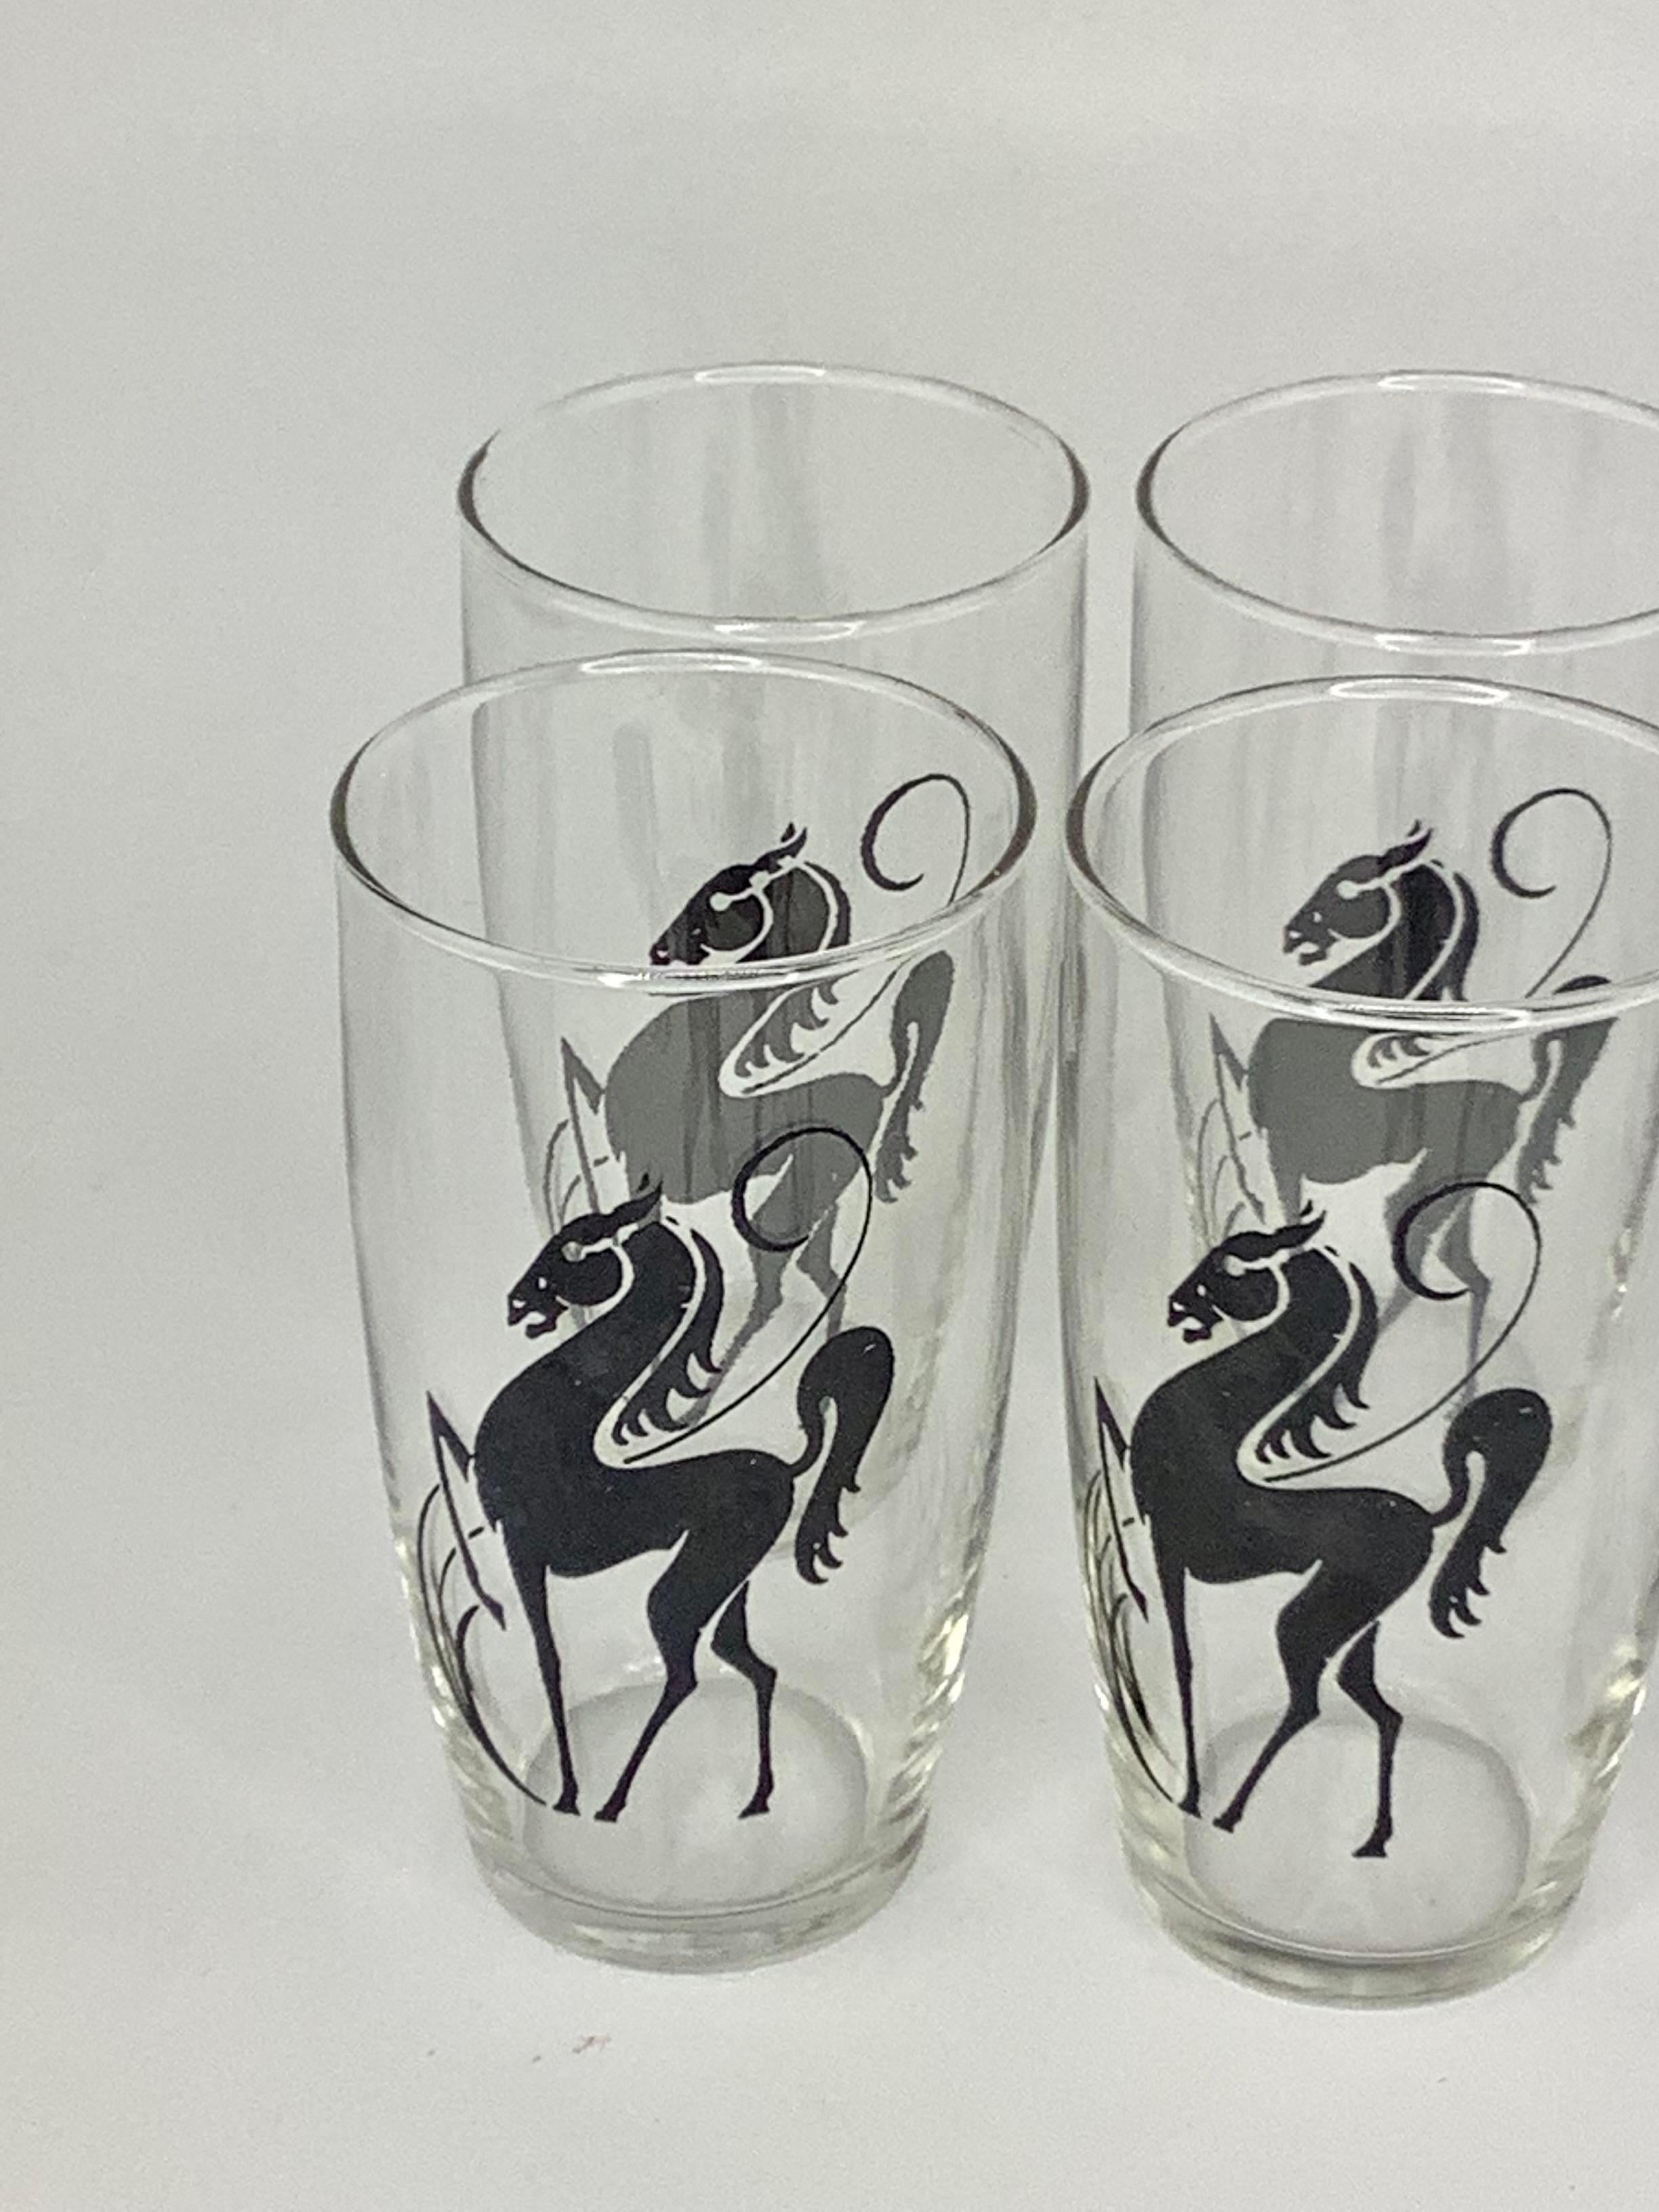 Lot de 8 verres Highball Vintage décorés d'élégants chevaux noirs cabrés. Les lunettes mesurent 2 3/4